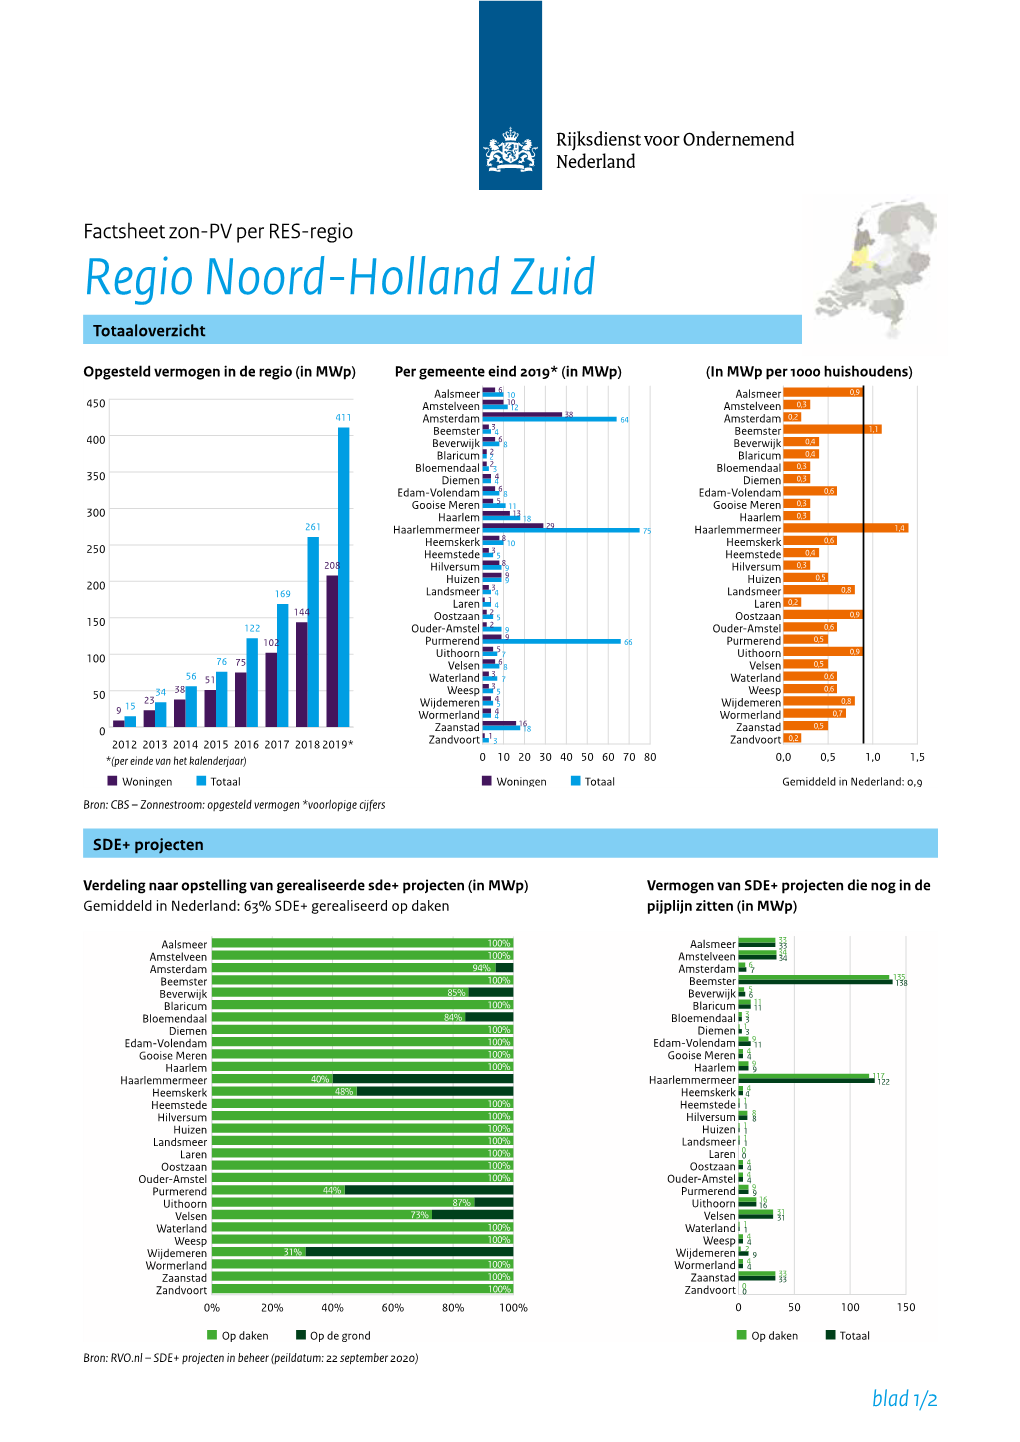 Factsheet Zon-PV Noord-Holland-Zuid PDF Document